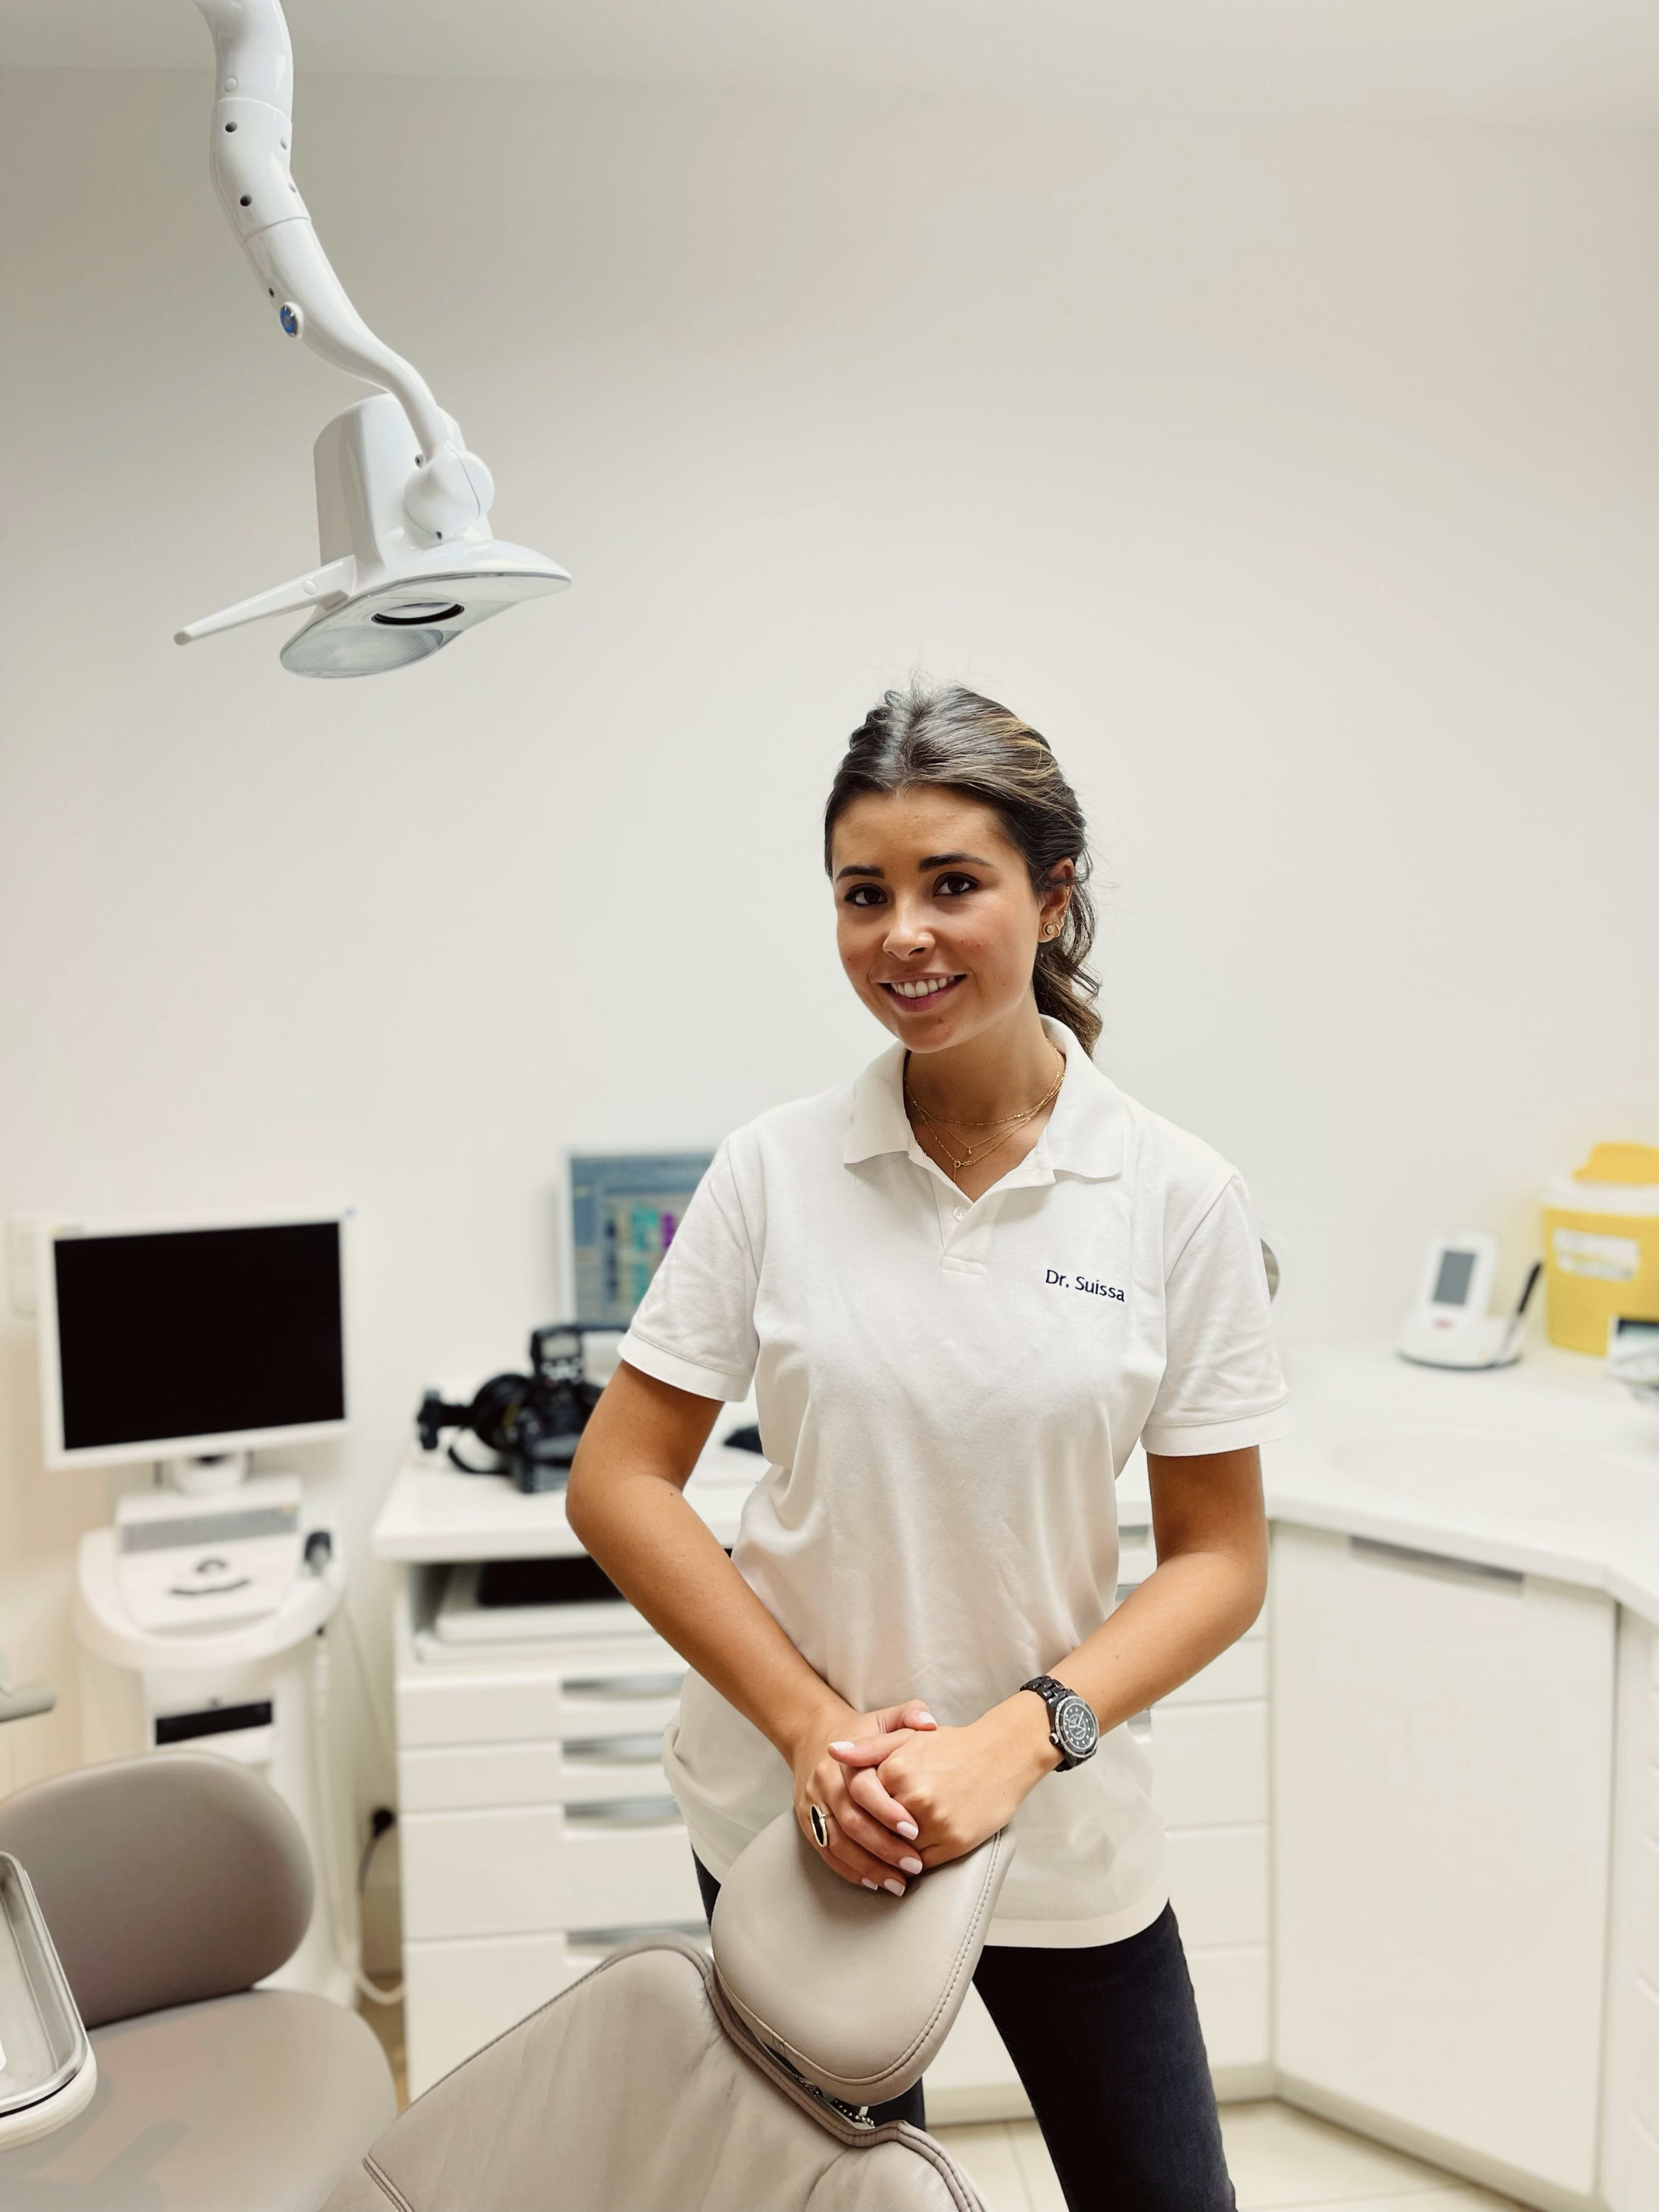 Prothèse adjointe - Clinique dentaire Elysées Ponthieu - Dentiste Paris 8